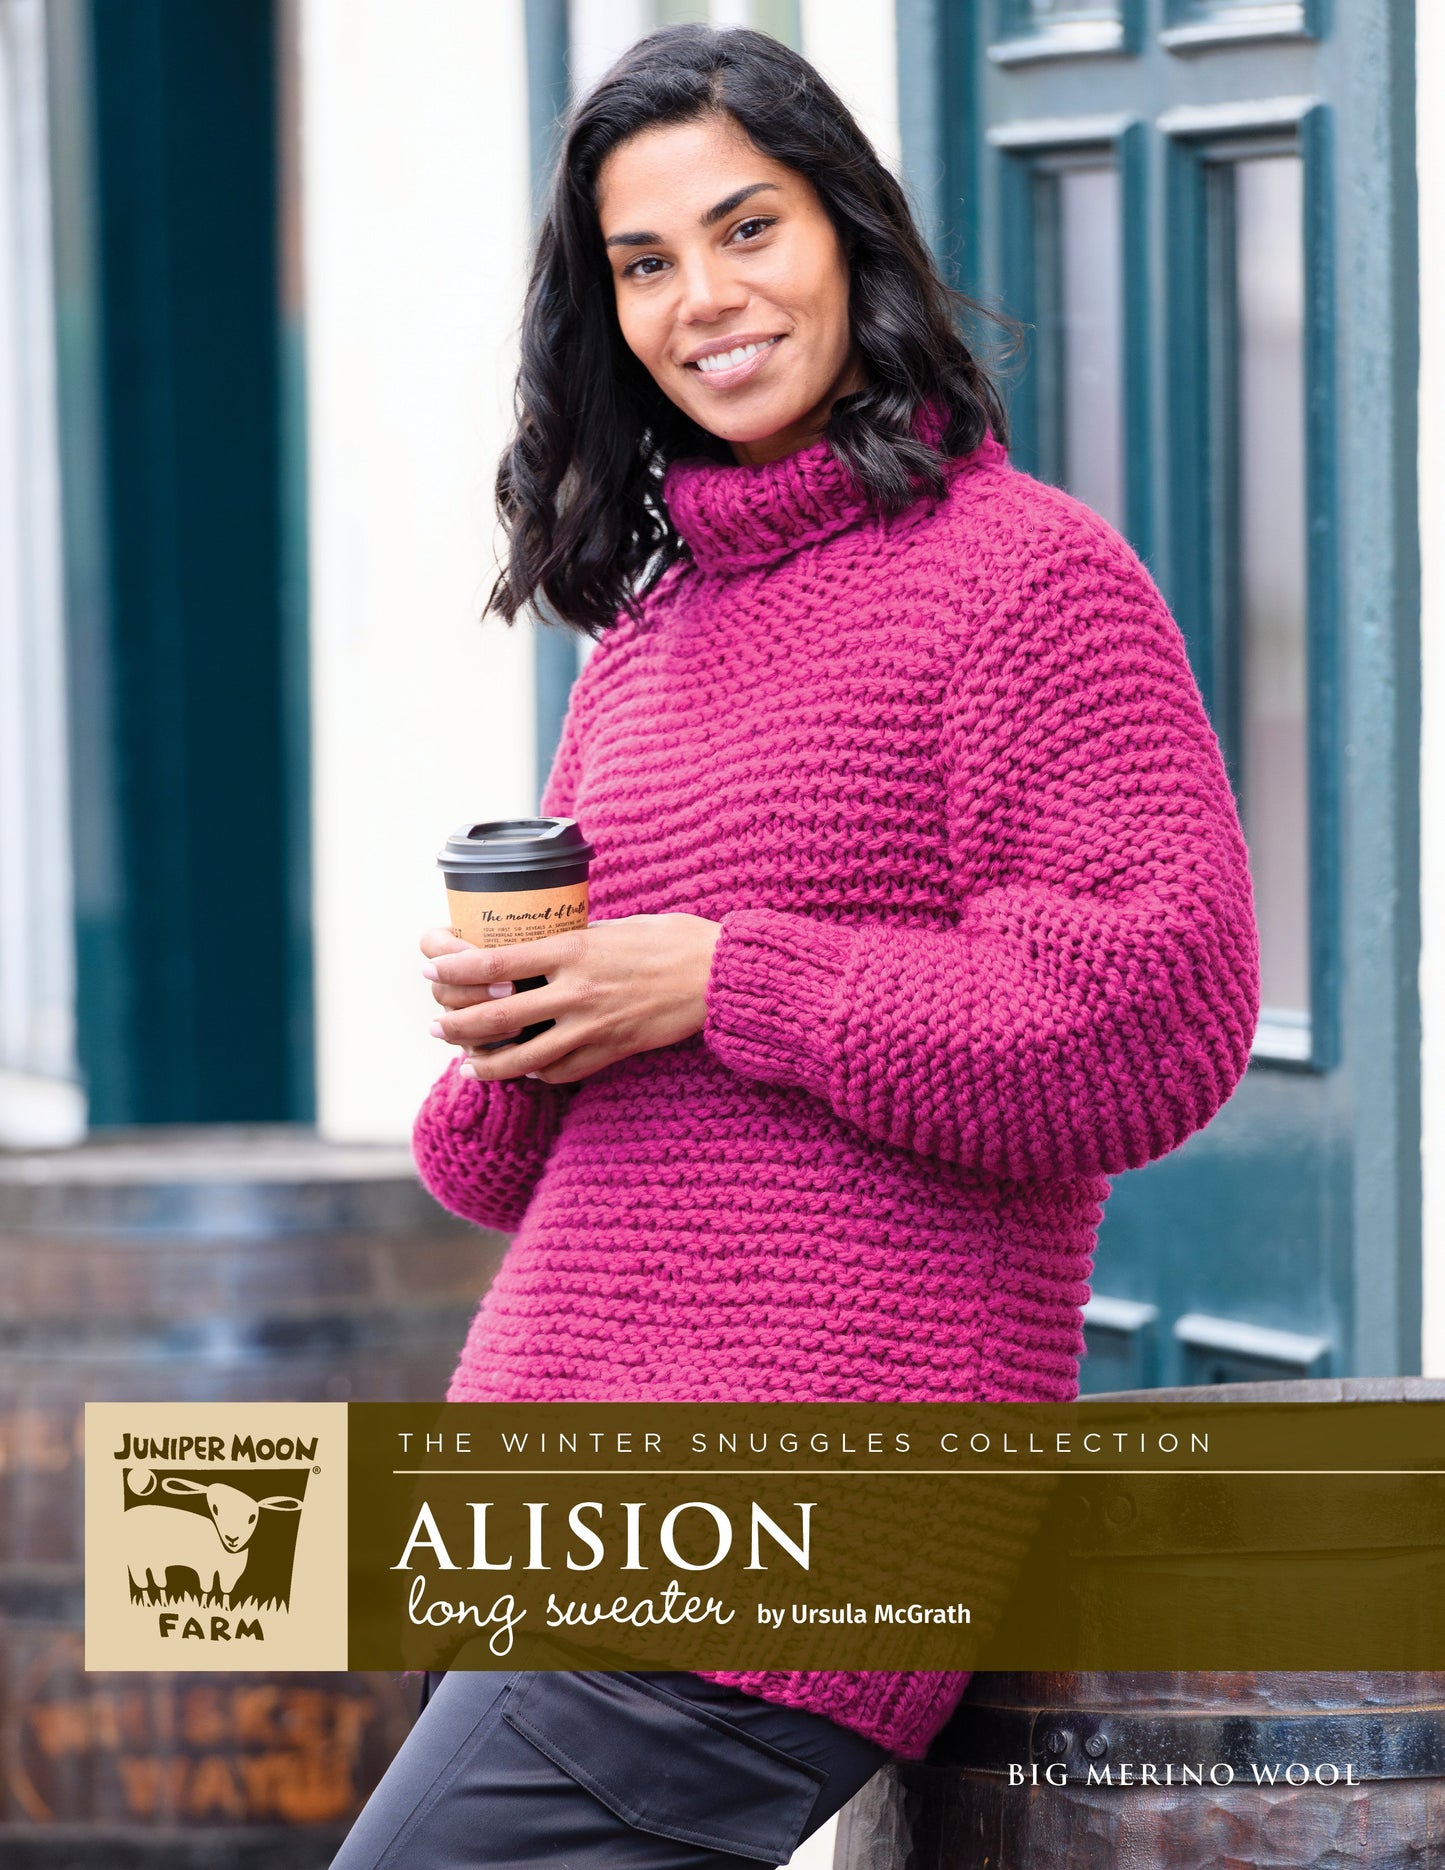 Alison Long Sweater Pattern Leaflet - Juniper Moon Farm's Big Merino Wool